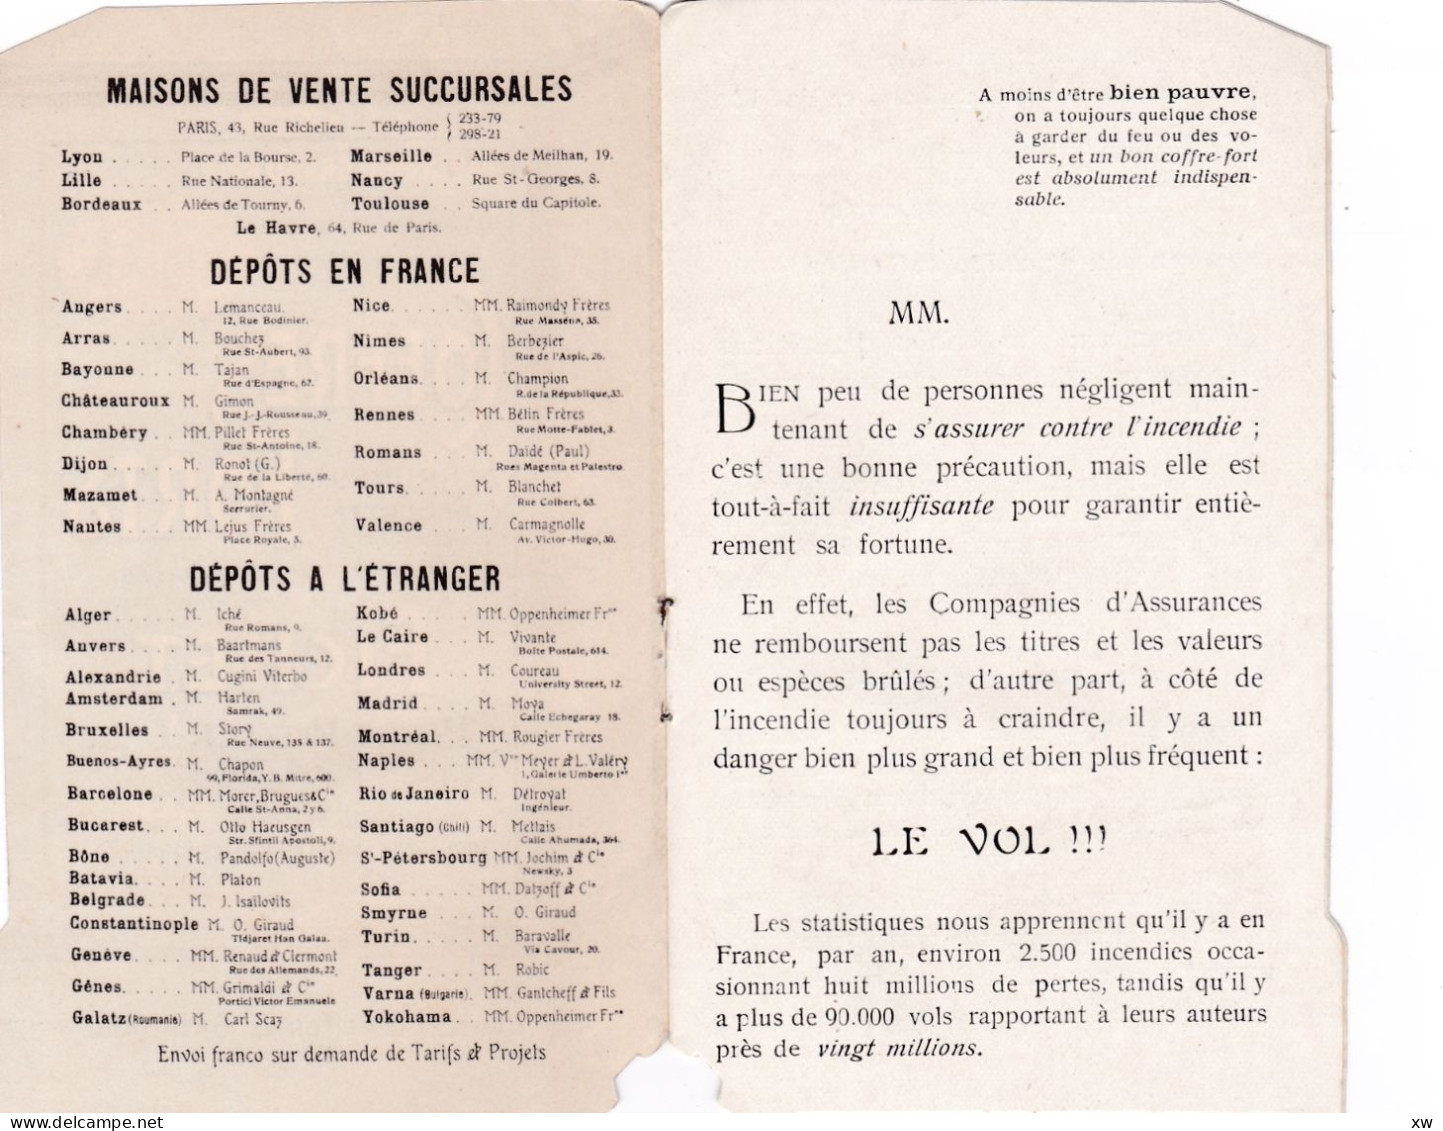 Petit Livret Publicitaire En Forme De Coffre-fort -FICHET-PARIS 1900 Le Seul Accordé Aux Coffres Forts 1900/20 -19-05-24 - Other & Unclassified